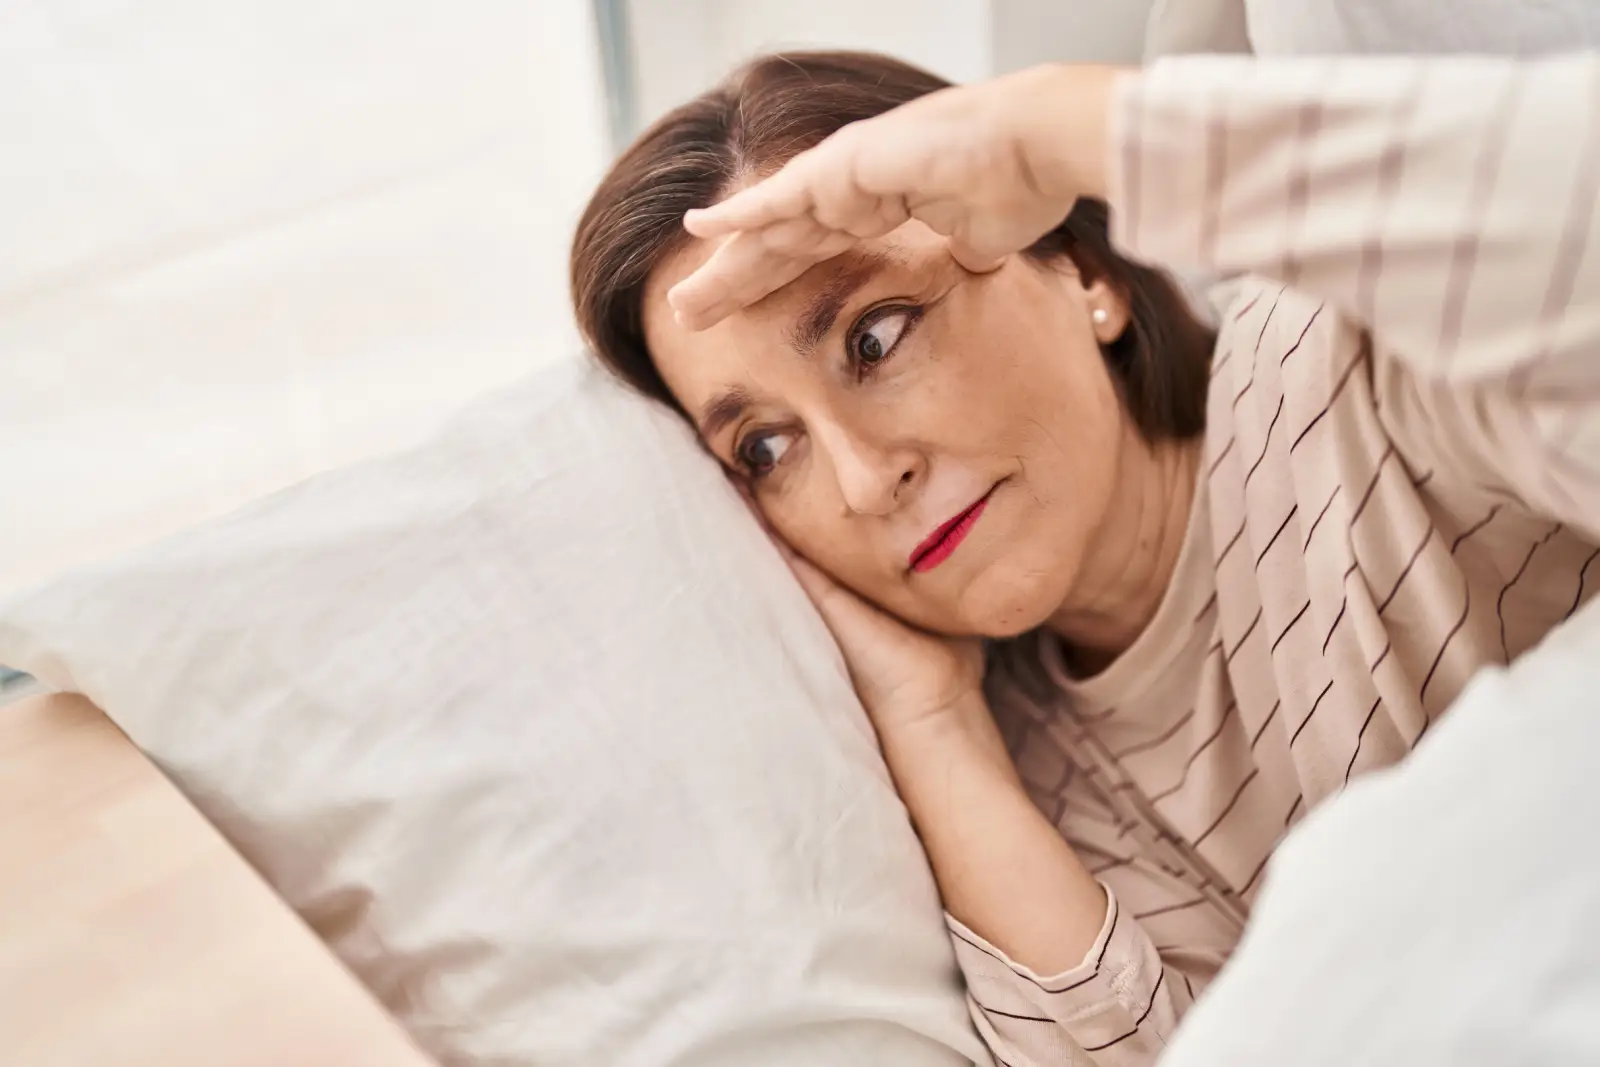 متى يبدأ سن اليأس عند المرأة وما هي أعراضه؟